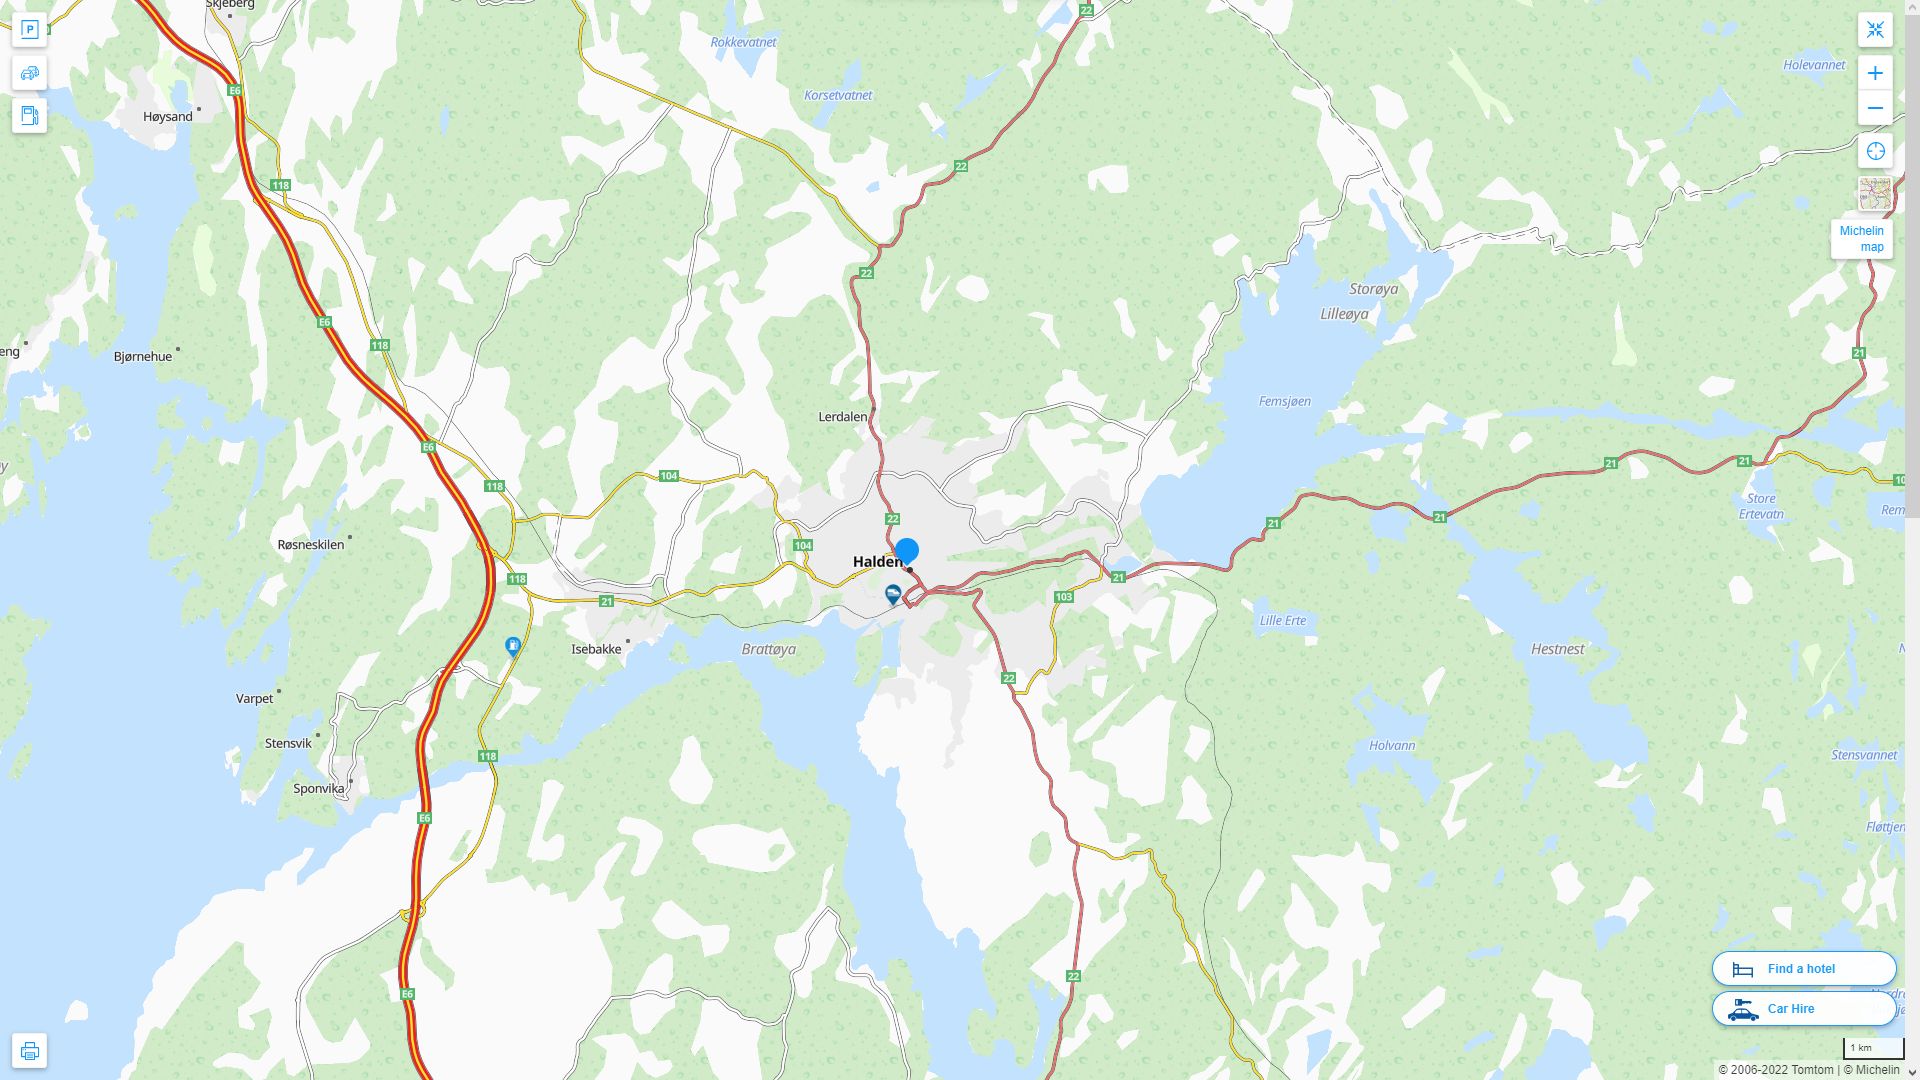 Halden Norvege Autoroute et carte routiere